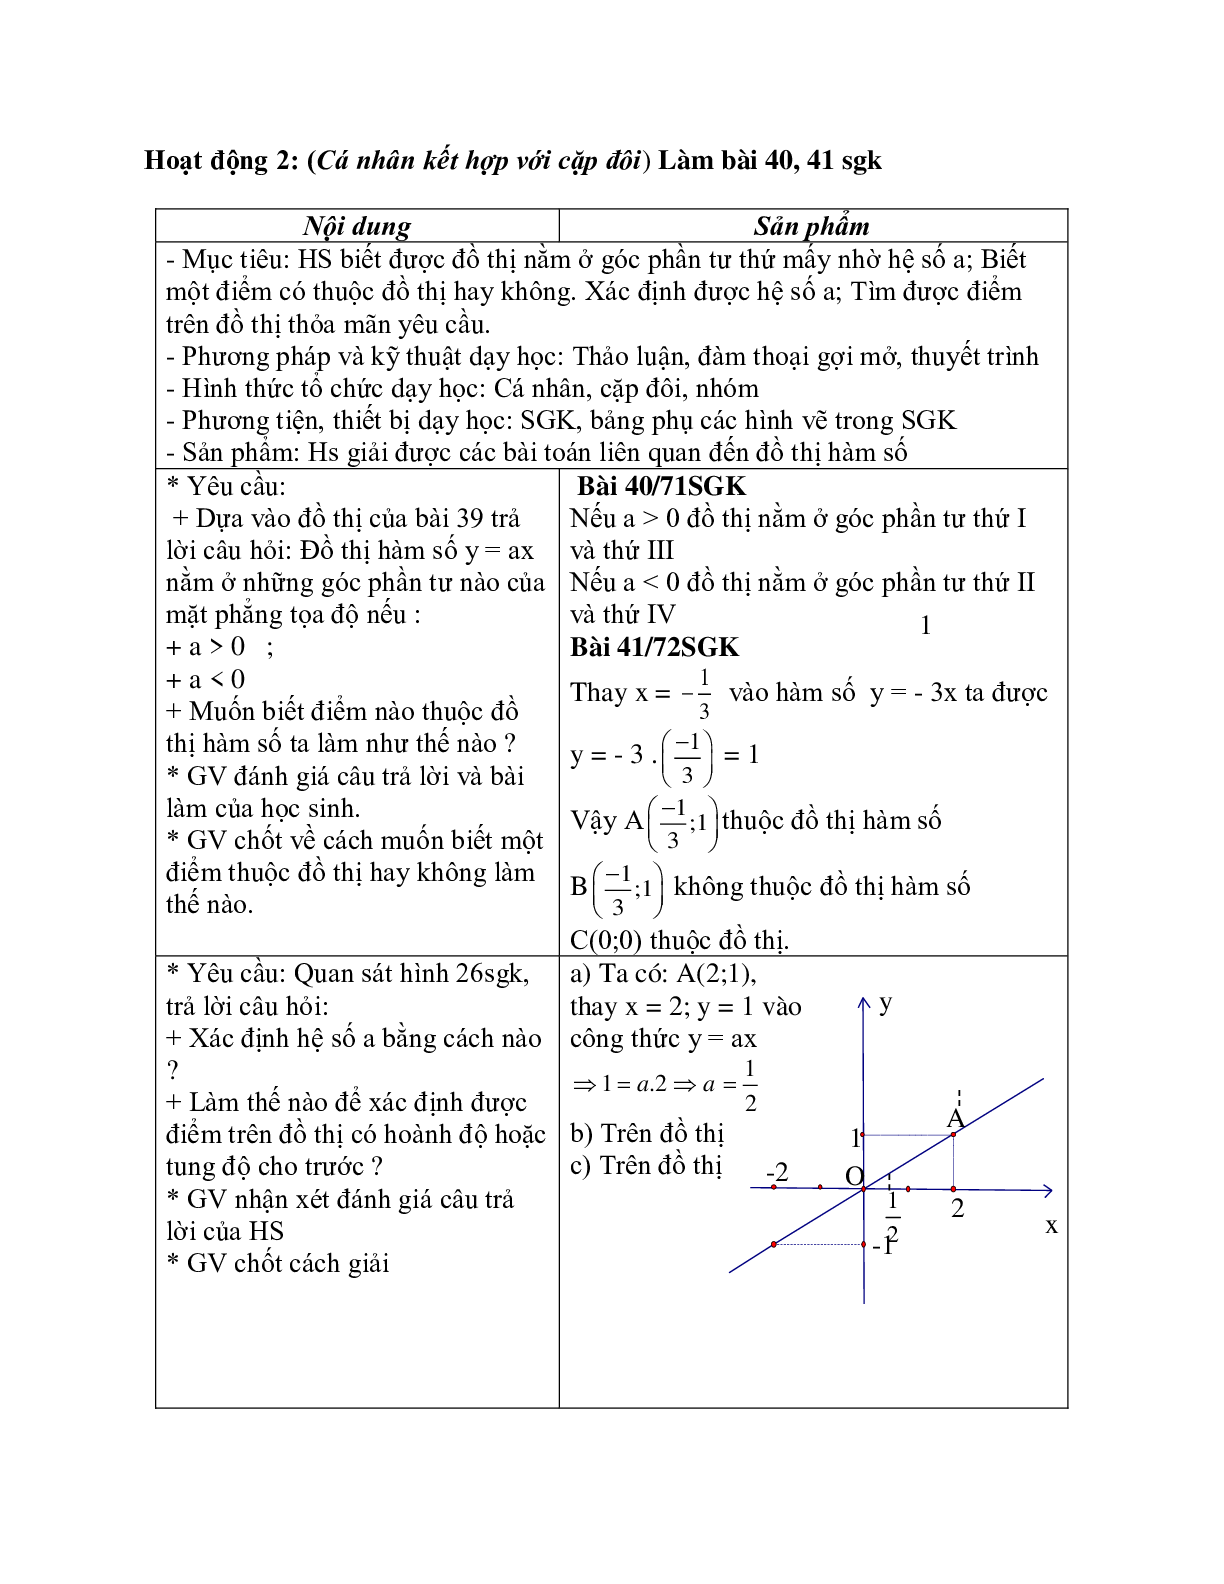 Giáo án Toán học 7 bài 7: Đồ thị hàm số y=ax (a khác 0) chuẩn nhất (trang 5)